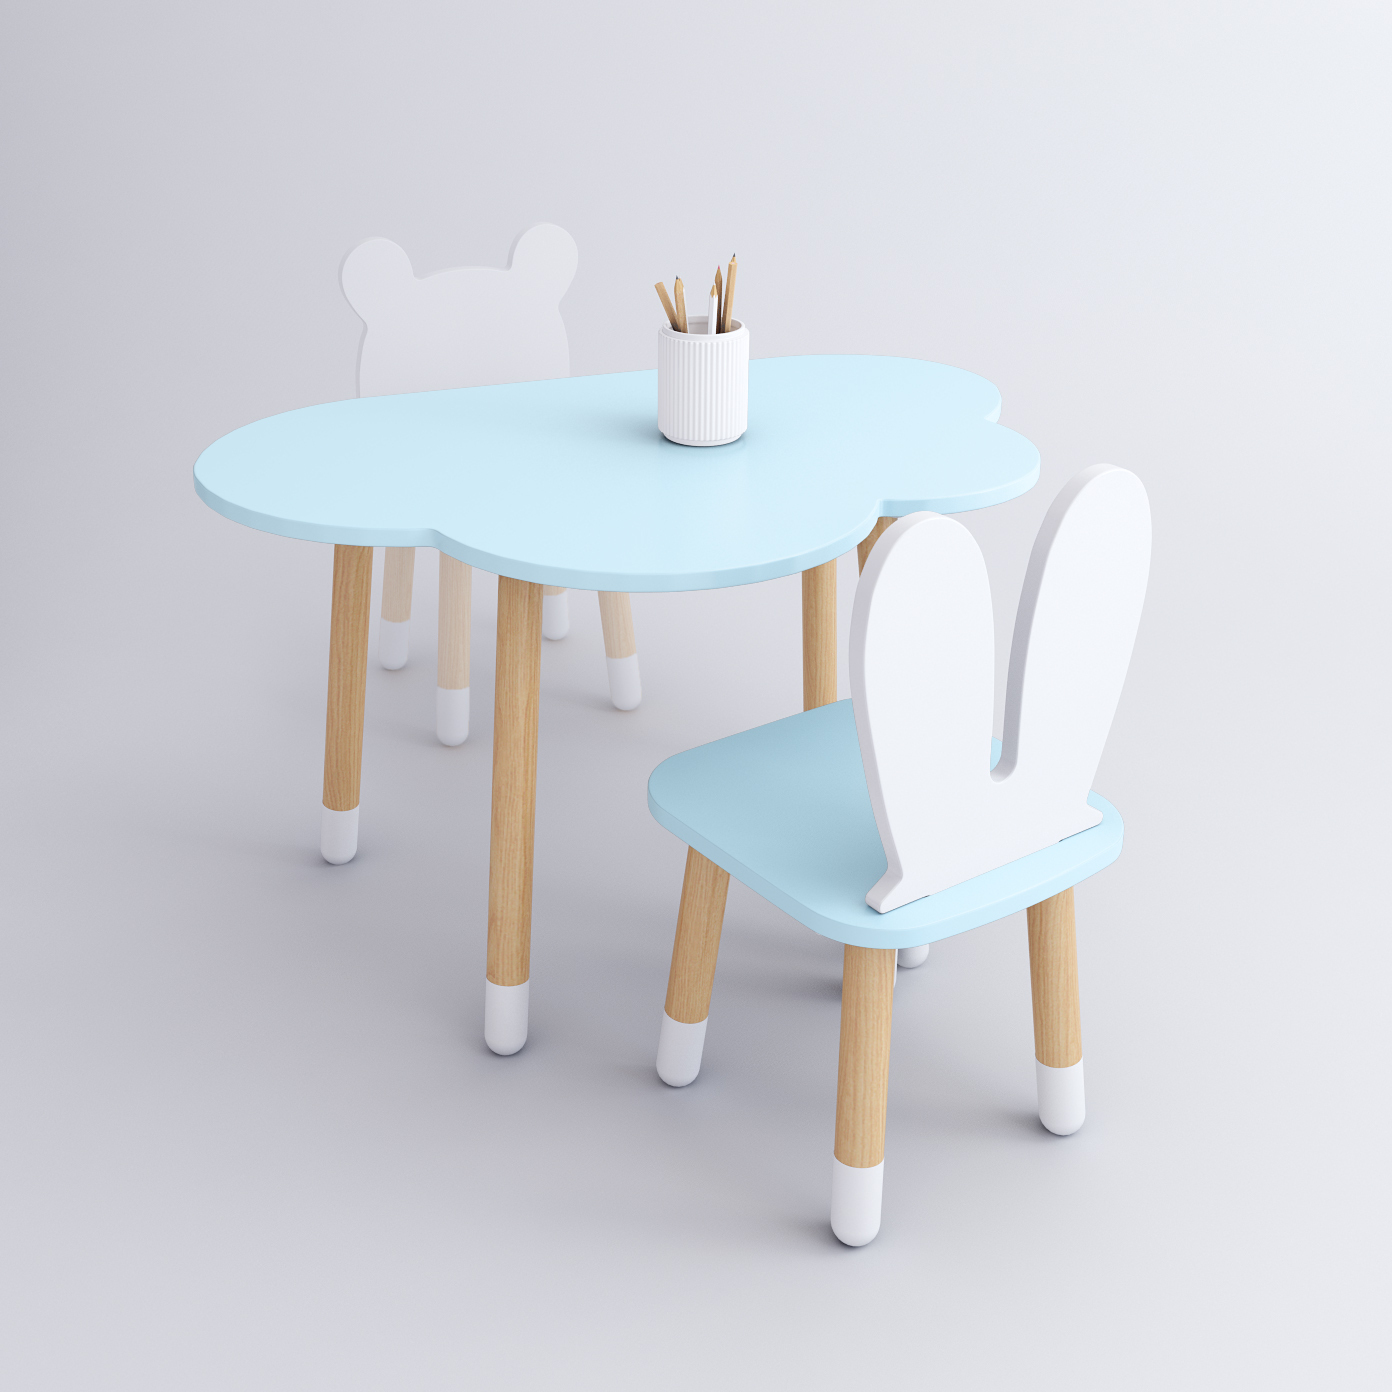 Комплект детской мебели DIMDOM kids, стол Облако голубой, стул Зайка голубой комплект детской мебели rules столик облачко и стульчик зайка белая и розовая эмаль